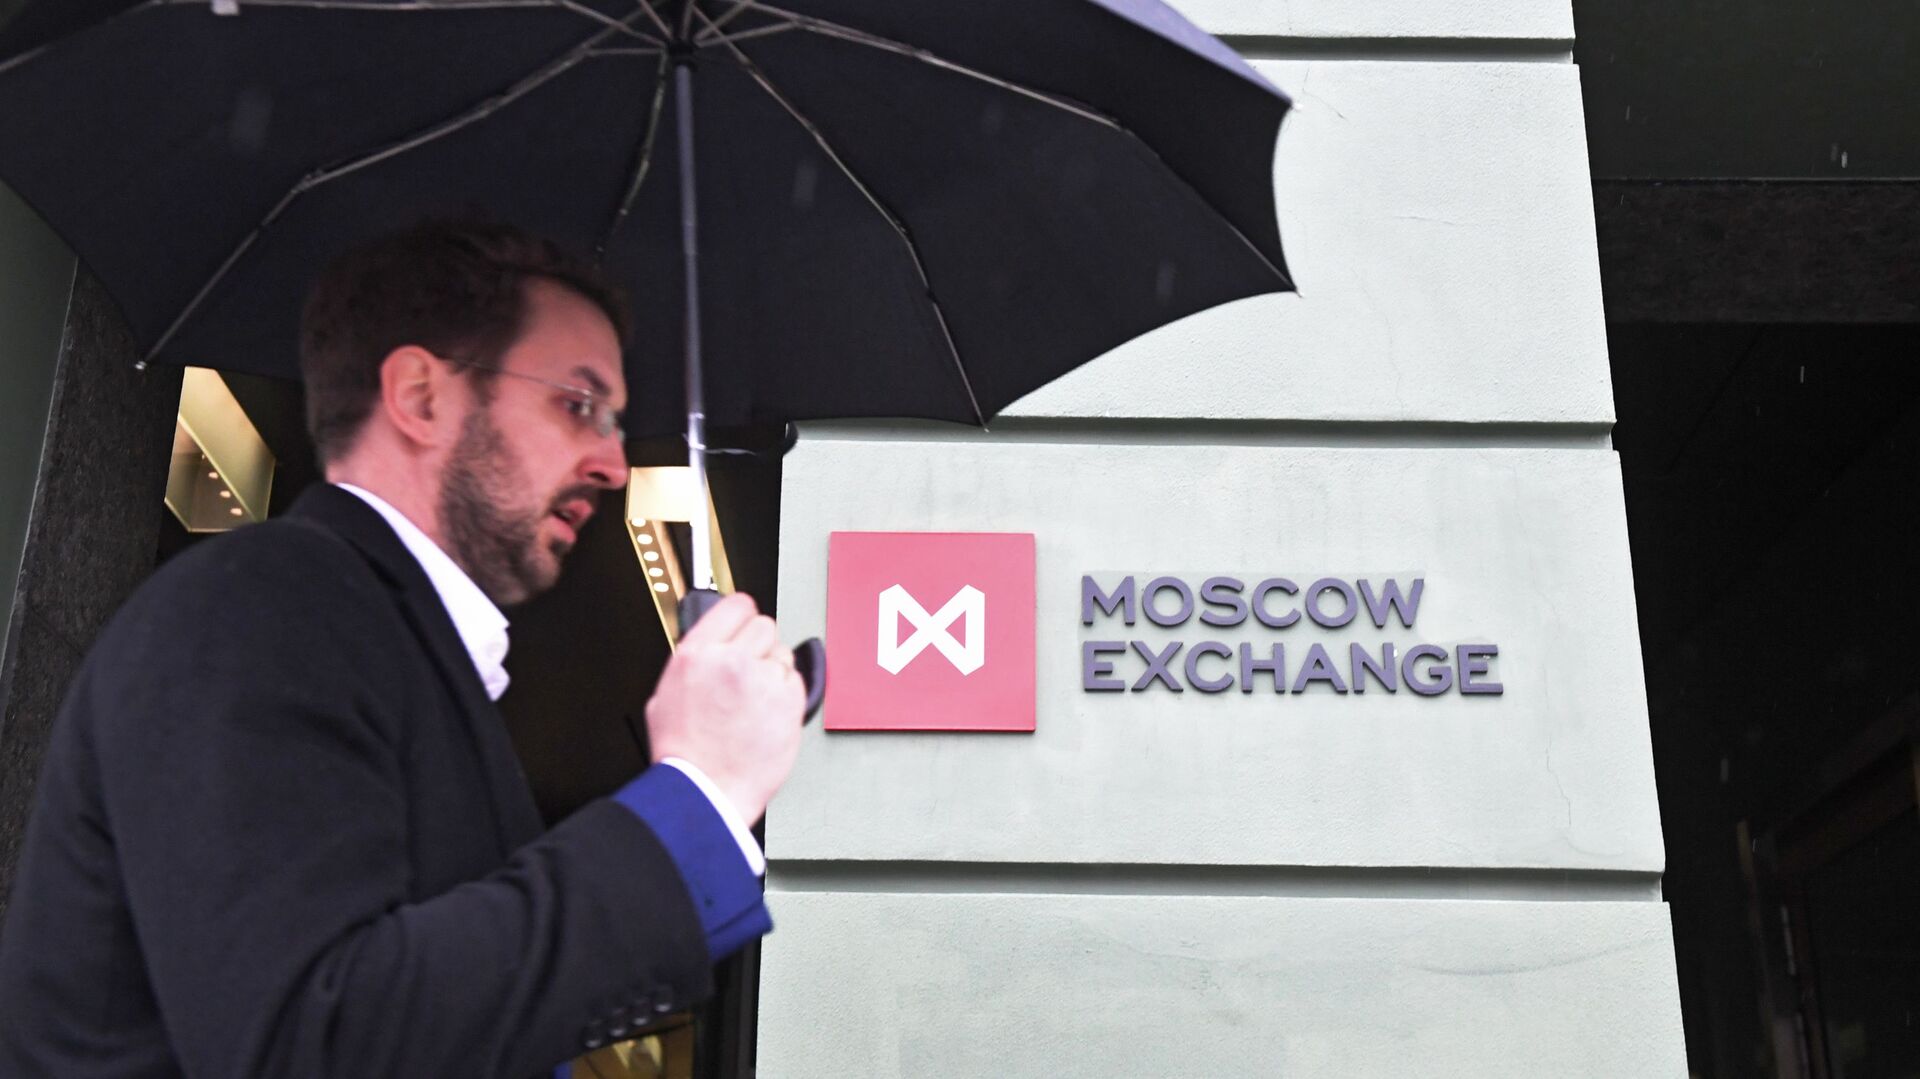 Moscow Exchange - Sputnik International, 1920, 14.09.2021